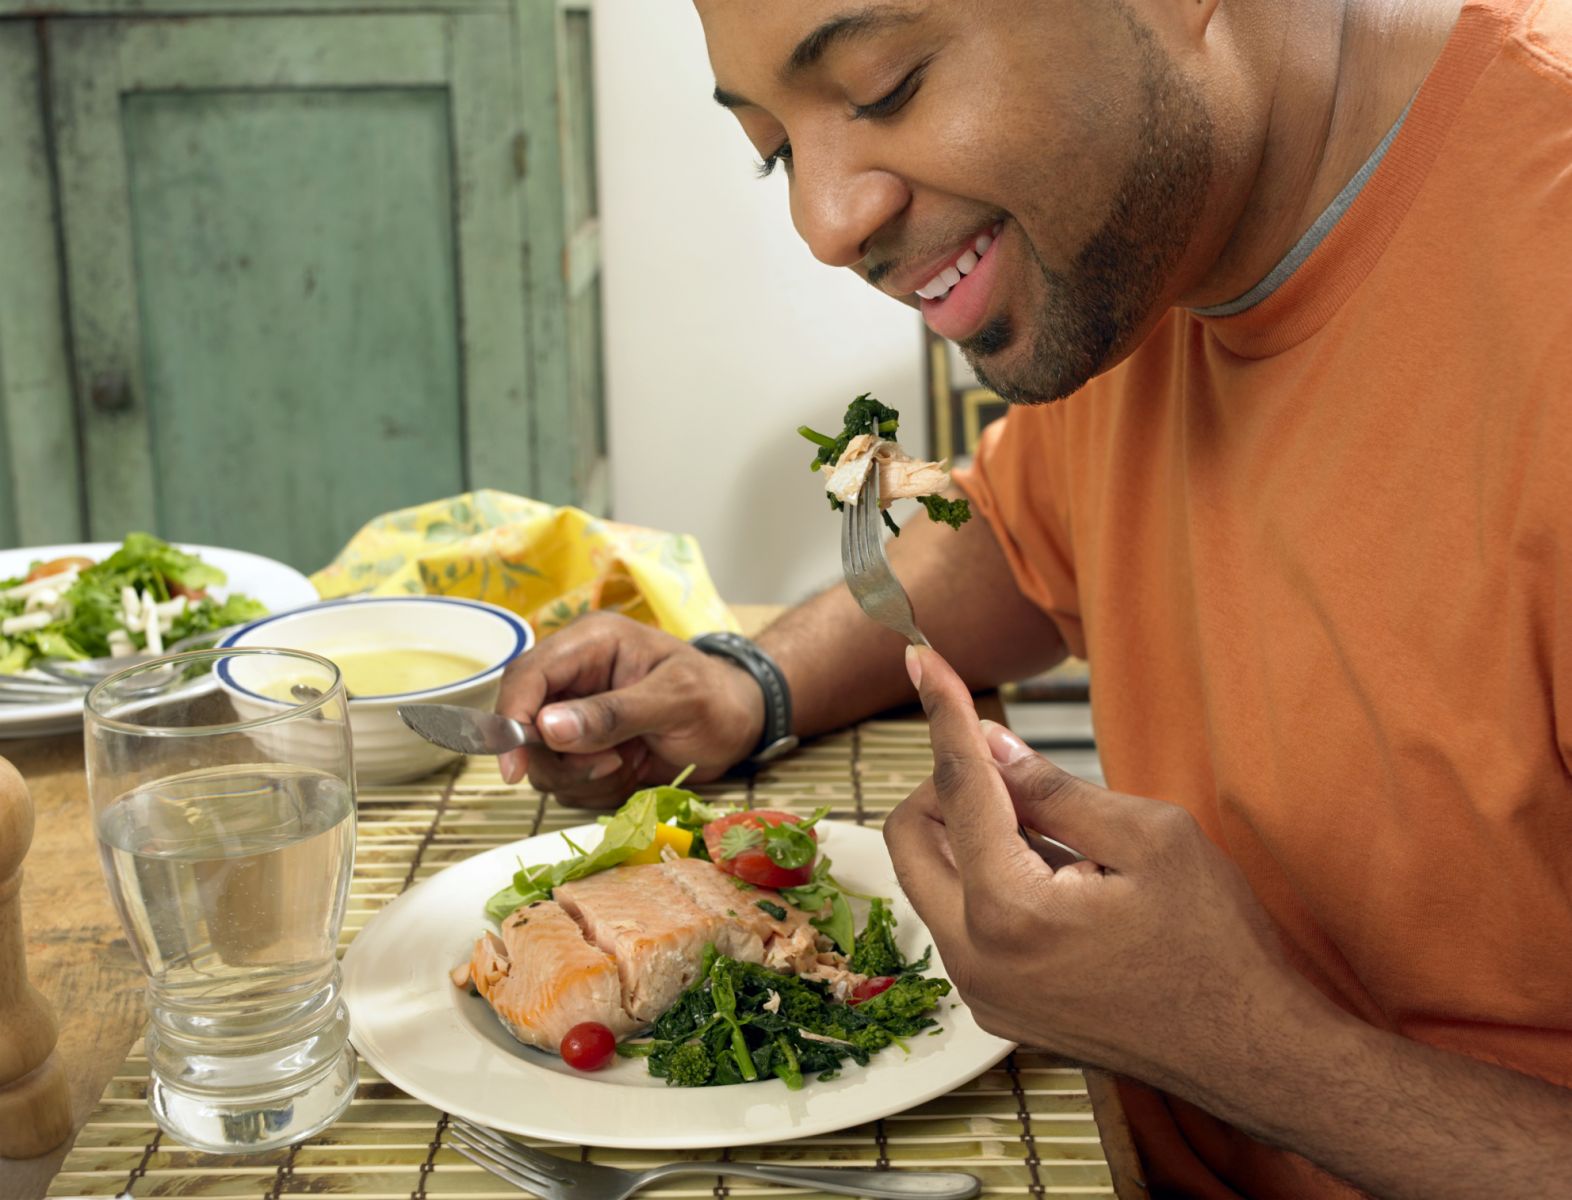 mens die zalm eet, een goede bron van hartbeschermende omega-3-vetzuren